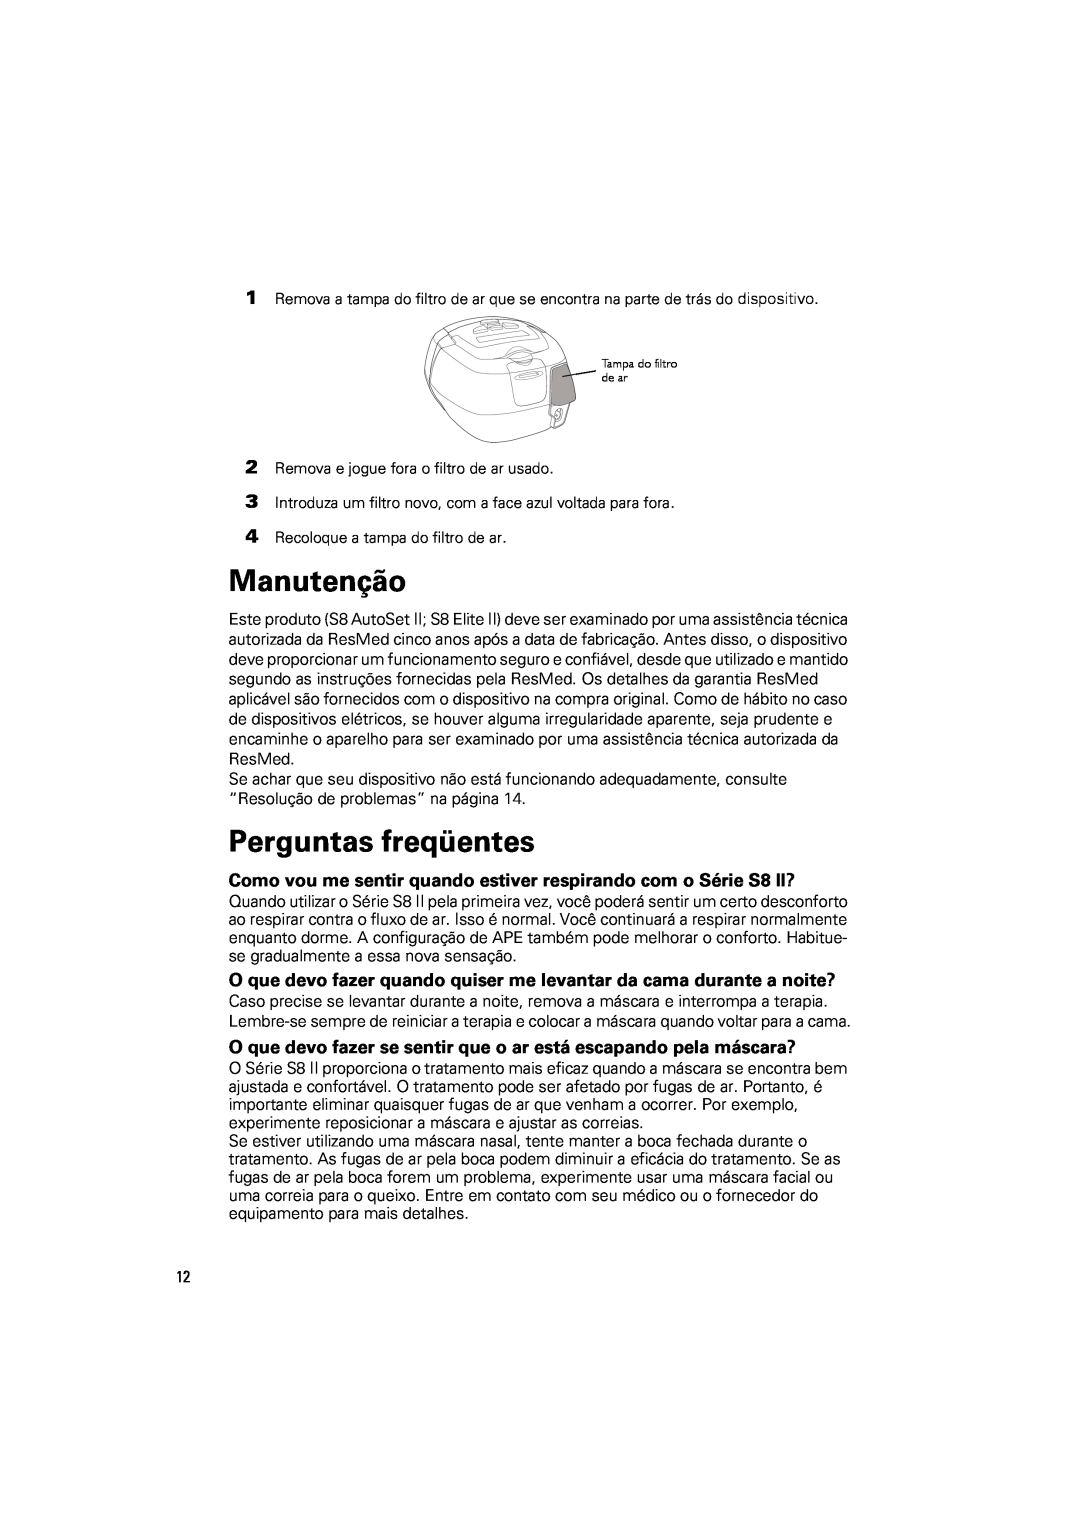 ResMed s8 manual Manutenção, Perguntas freqüentes 